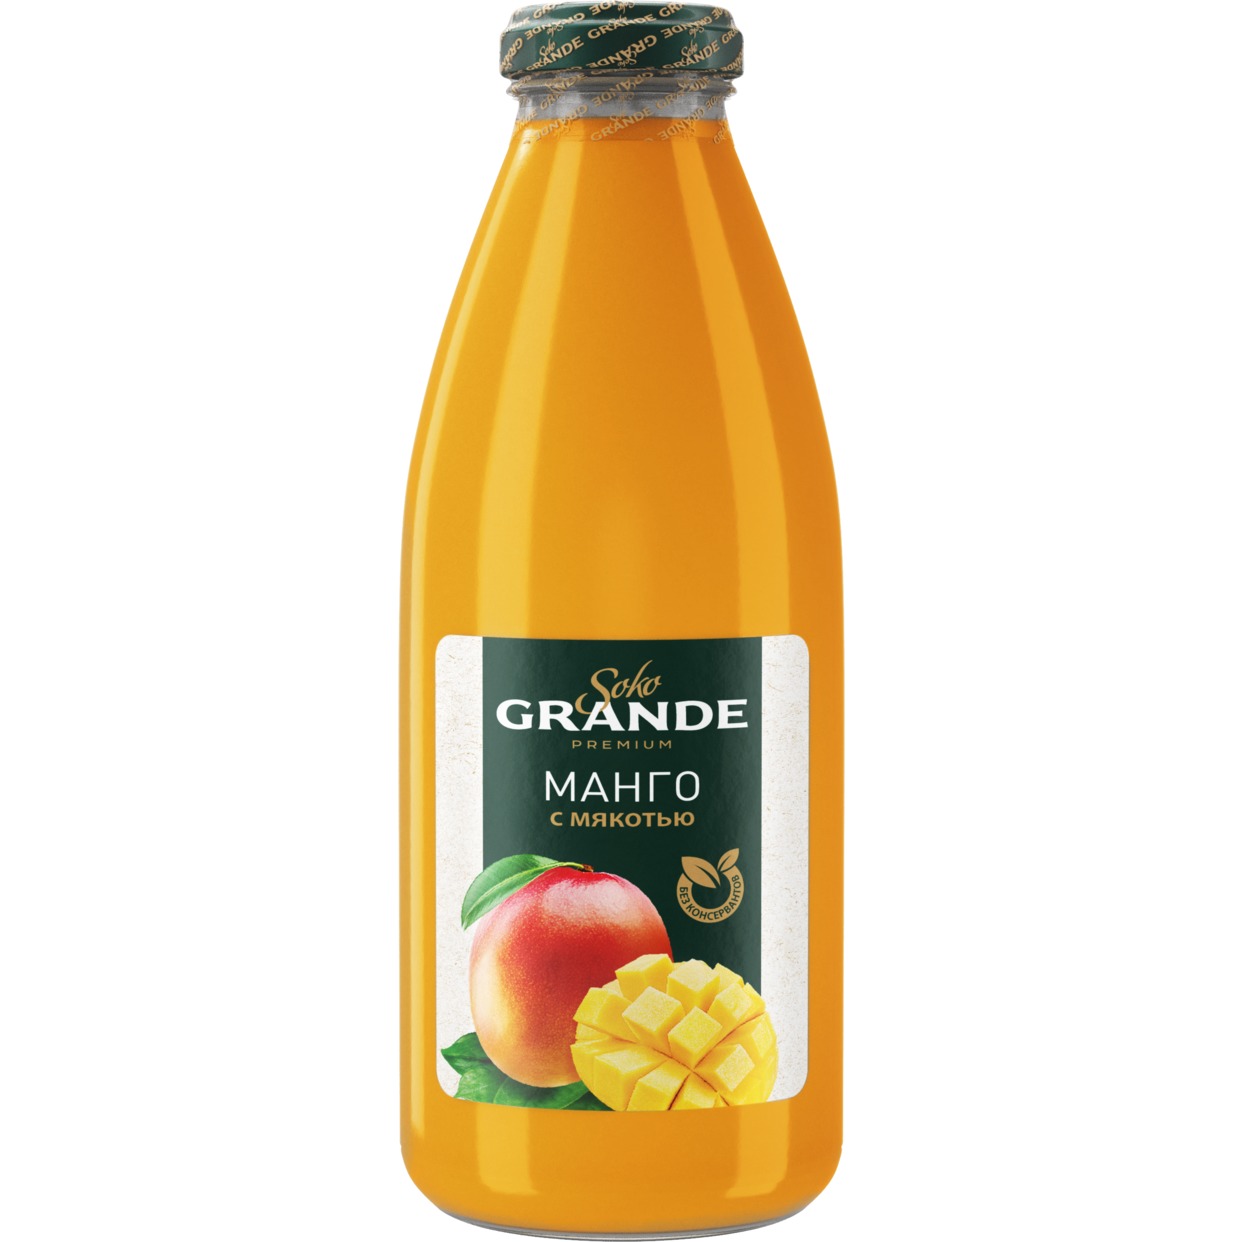 SOKO GRANDE Нектар из манго с мяк.0,75л по акции в Пятерочке